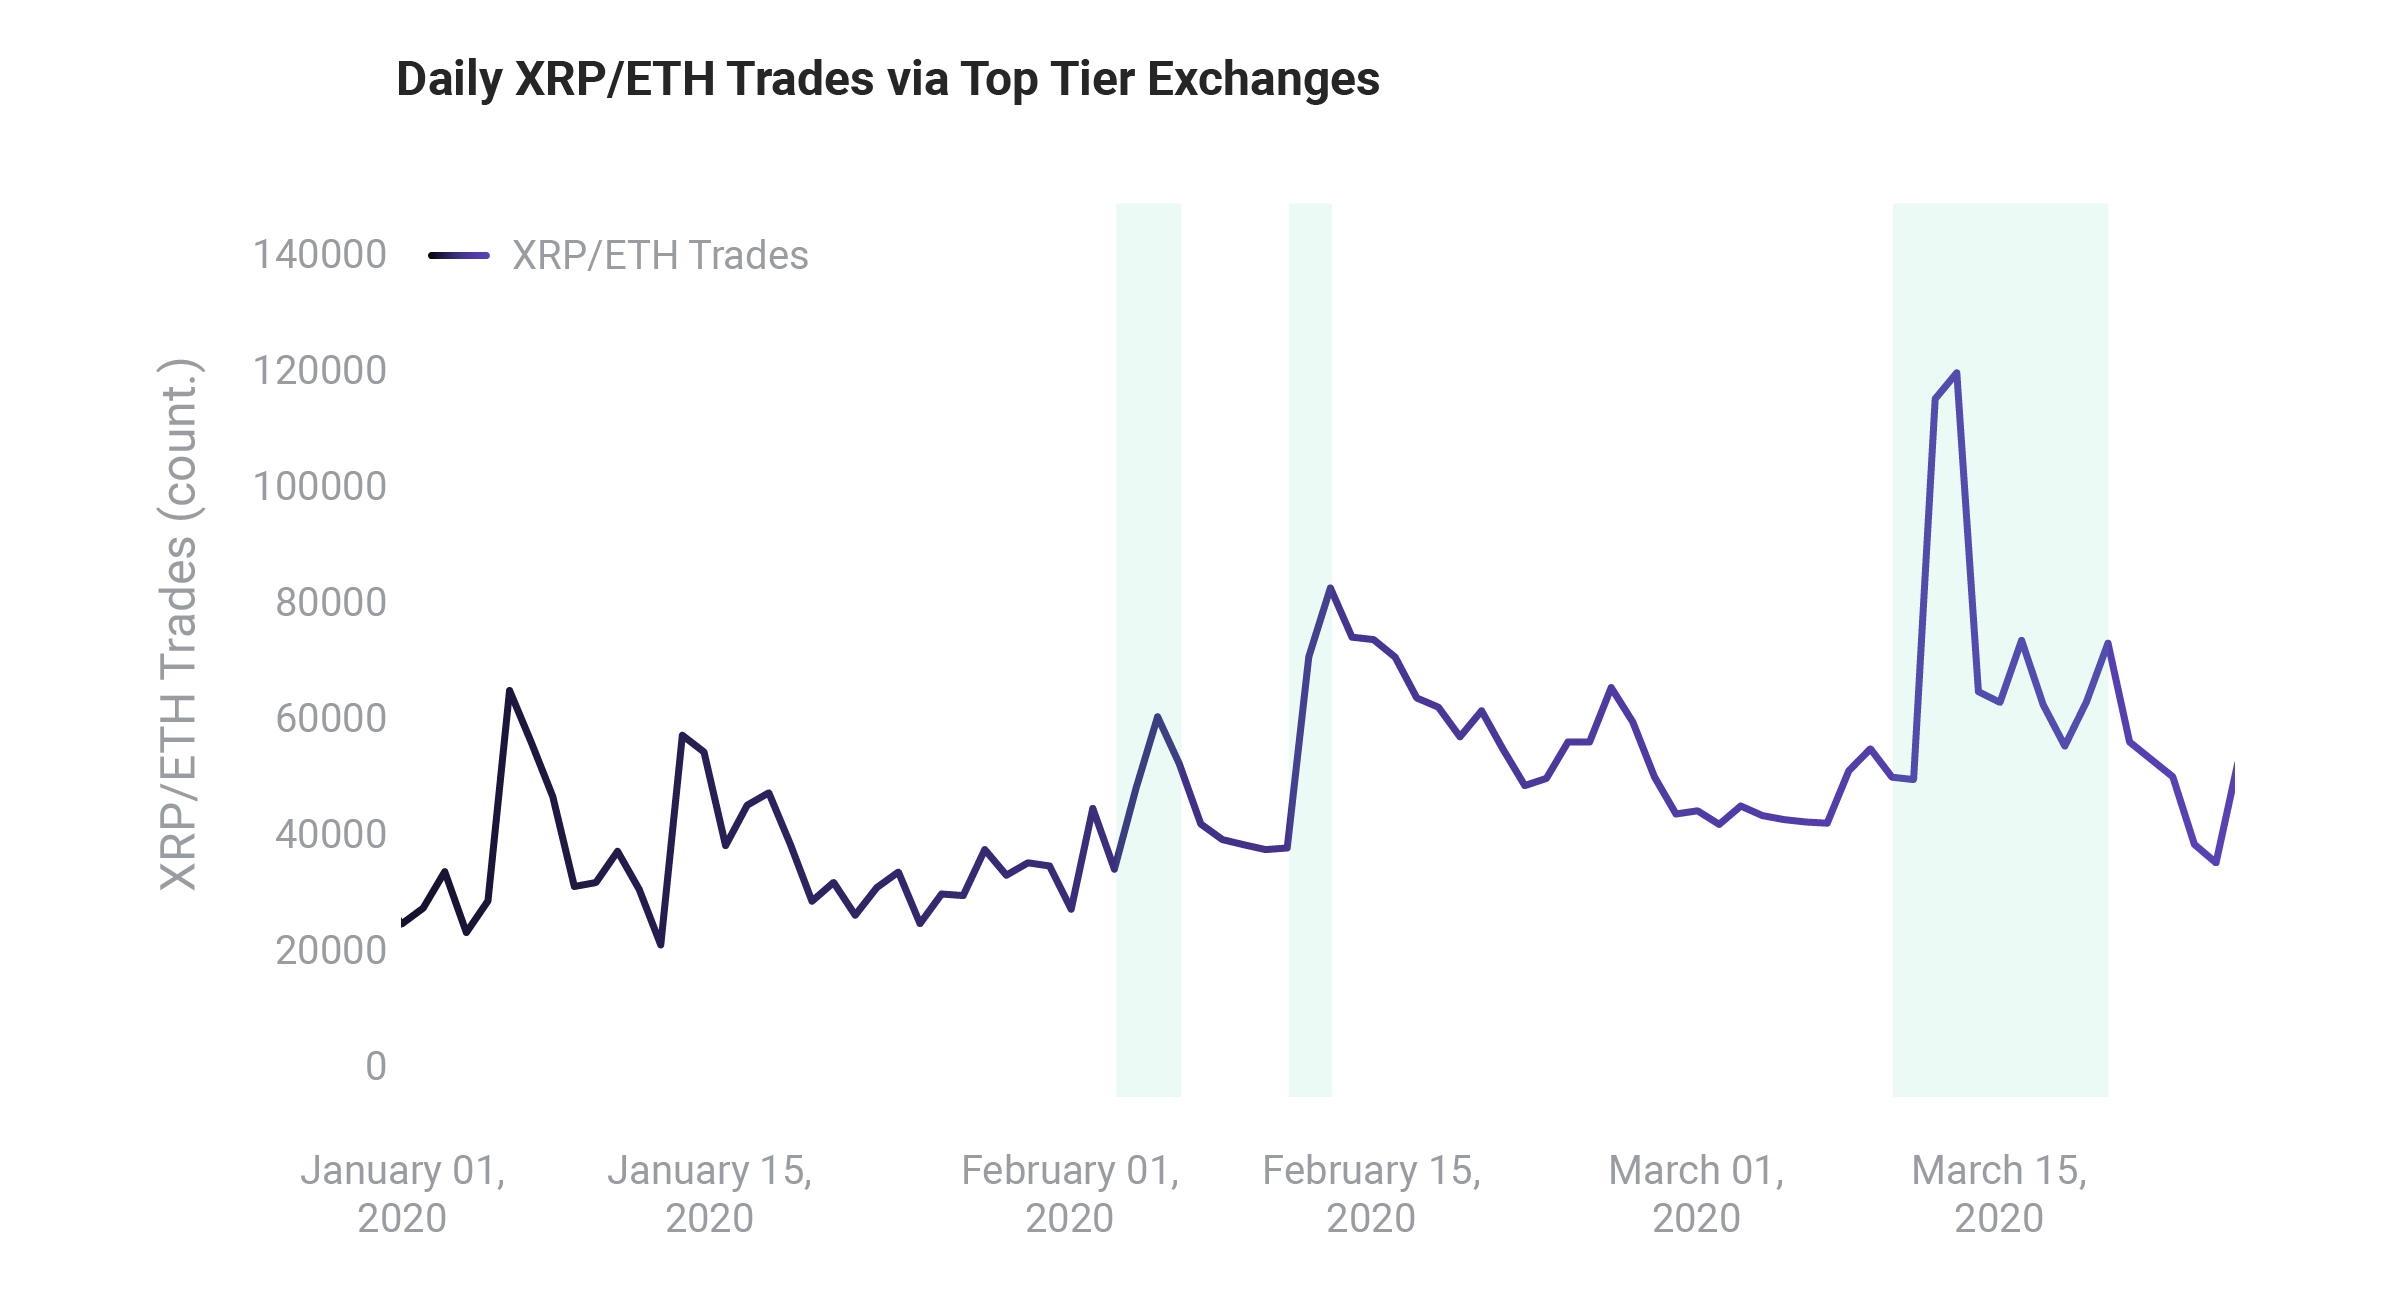 ETH/XRP trades increasing